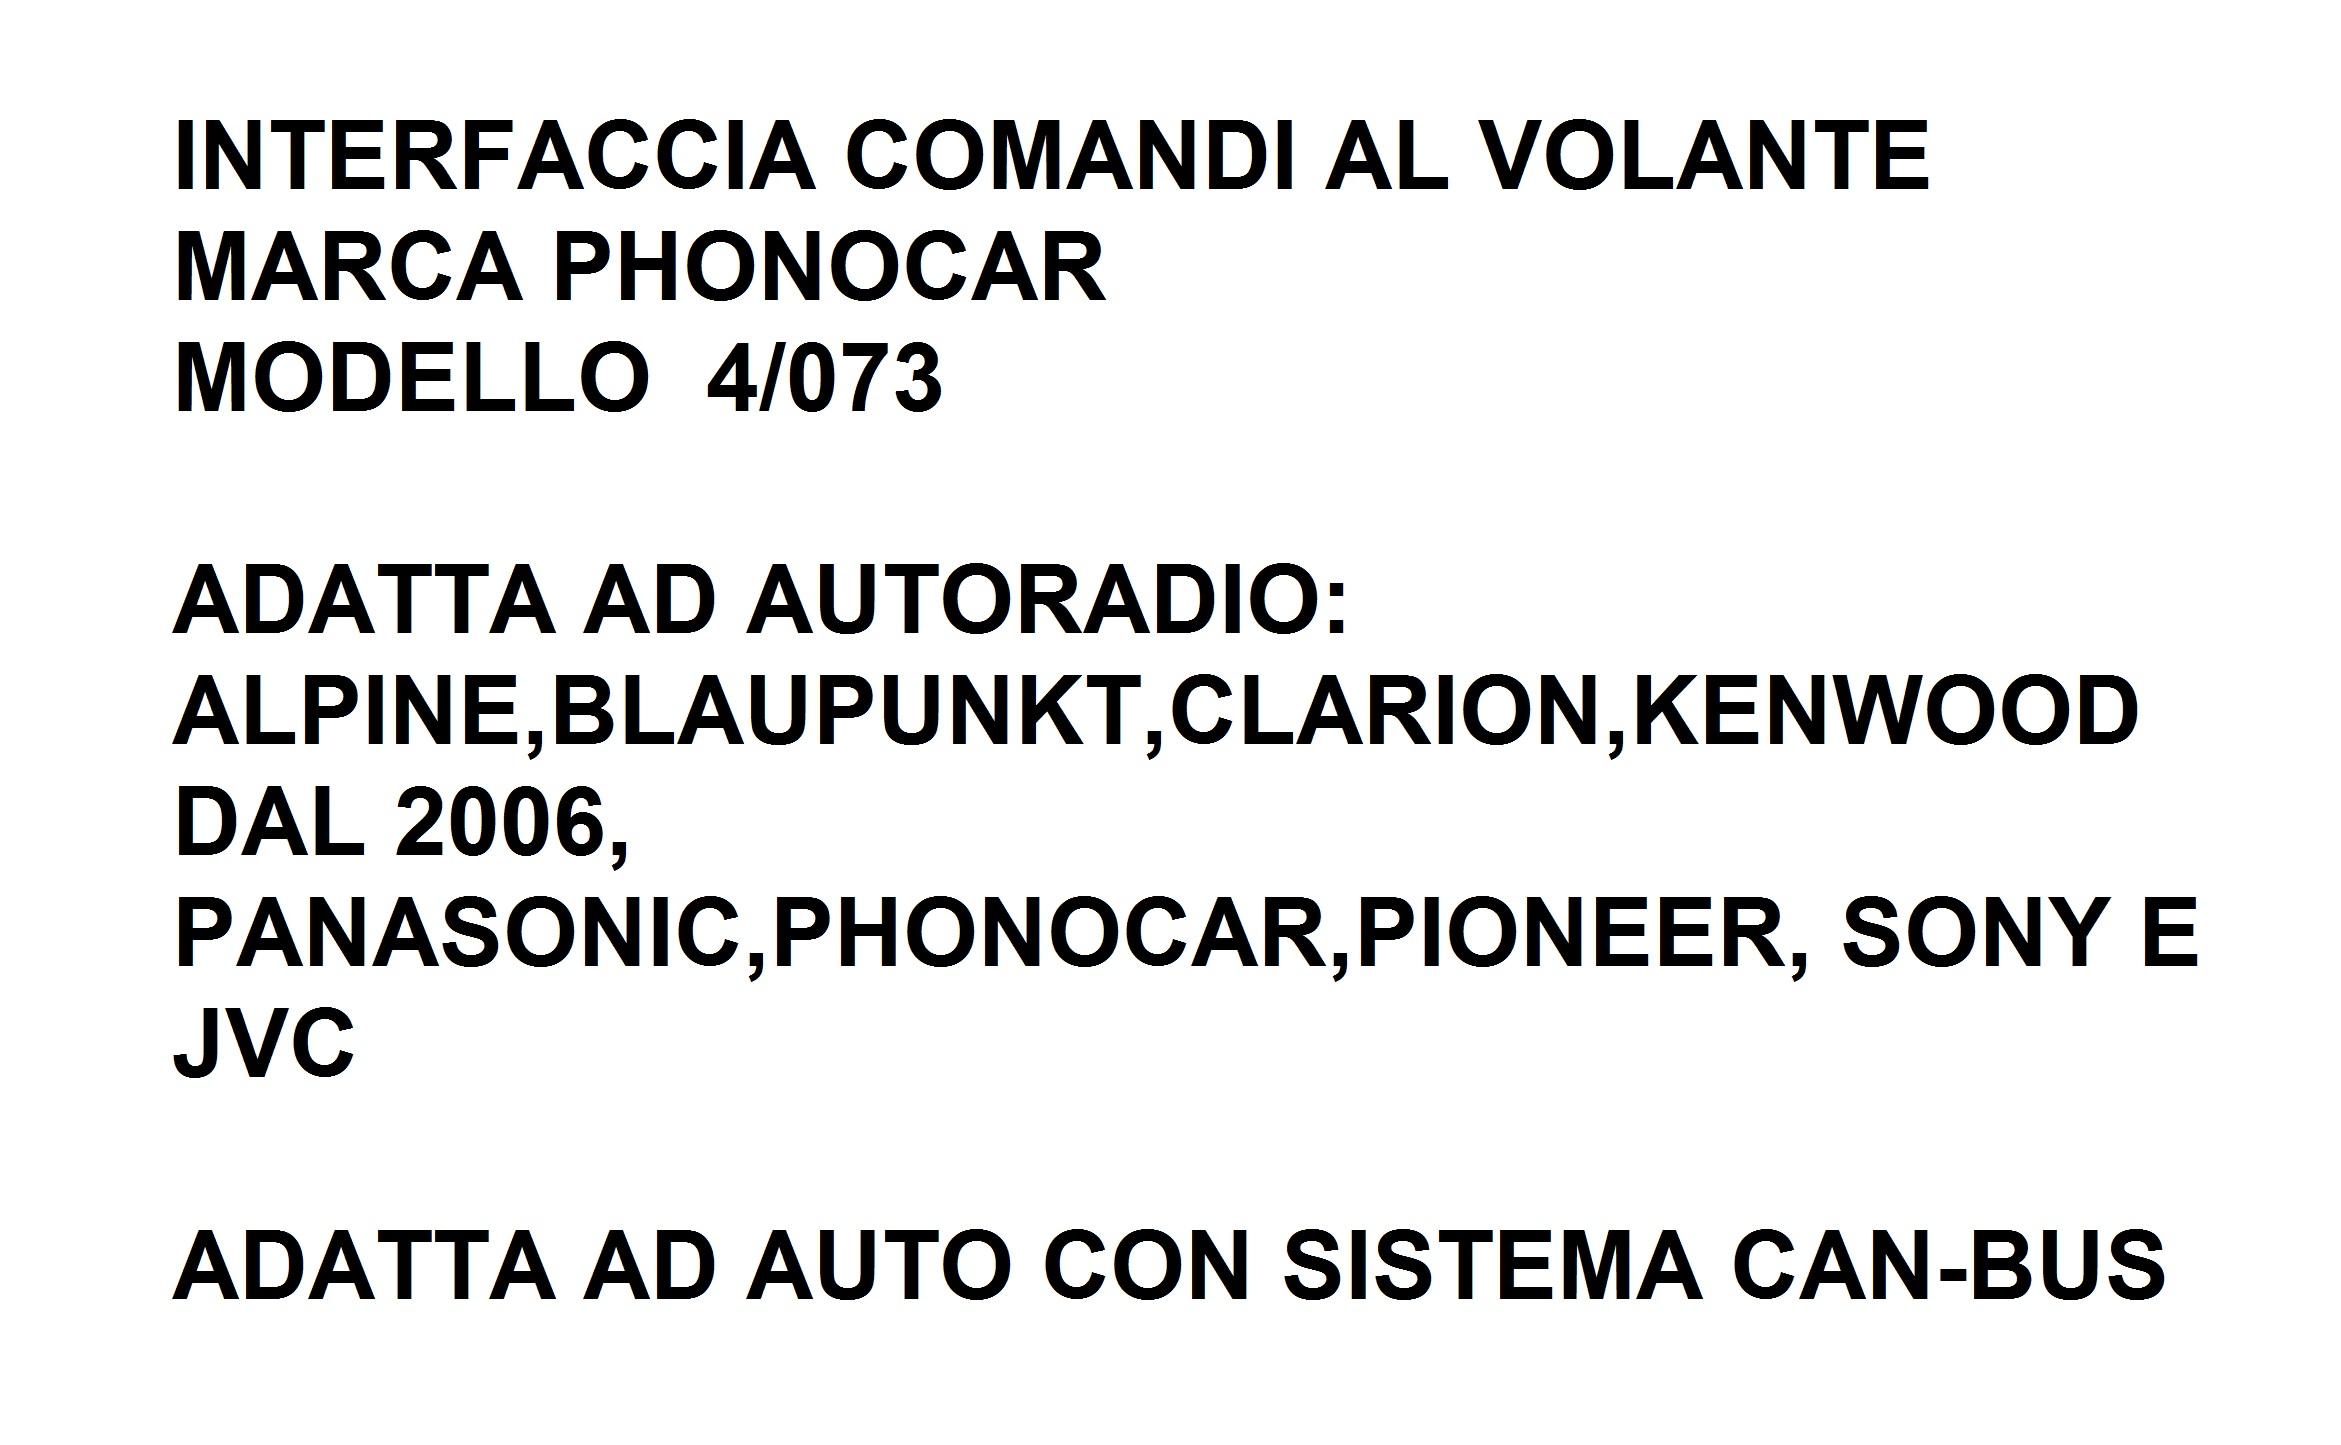 9550 - VW MULTIVAN DAL 2007 INTERFACCIA CAN-BUS&COMANDI AL VOLANTE 4/073PHONOCAR